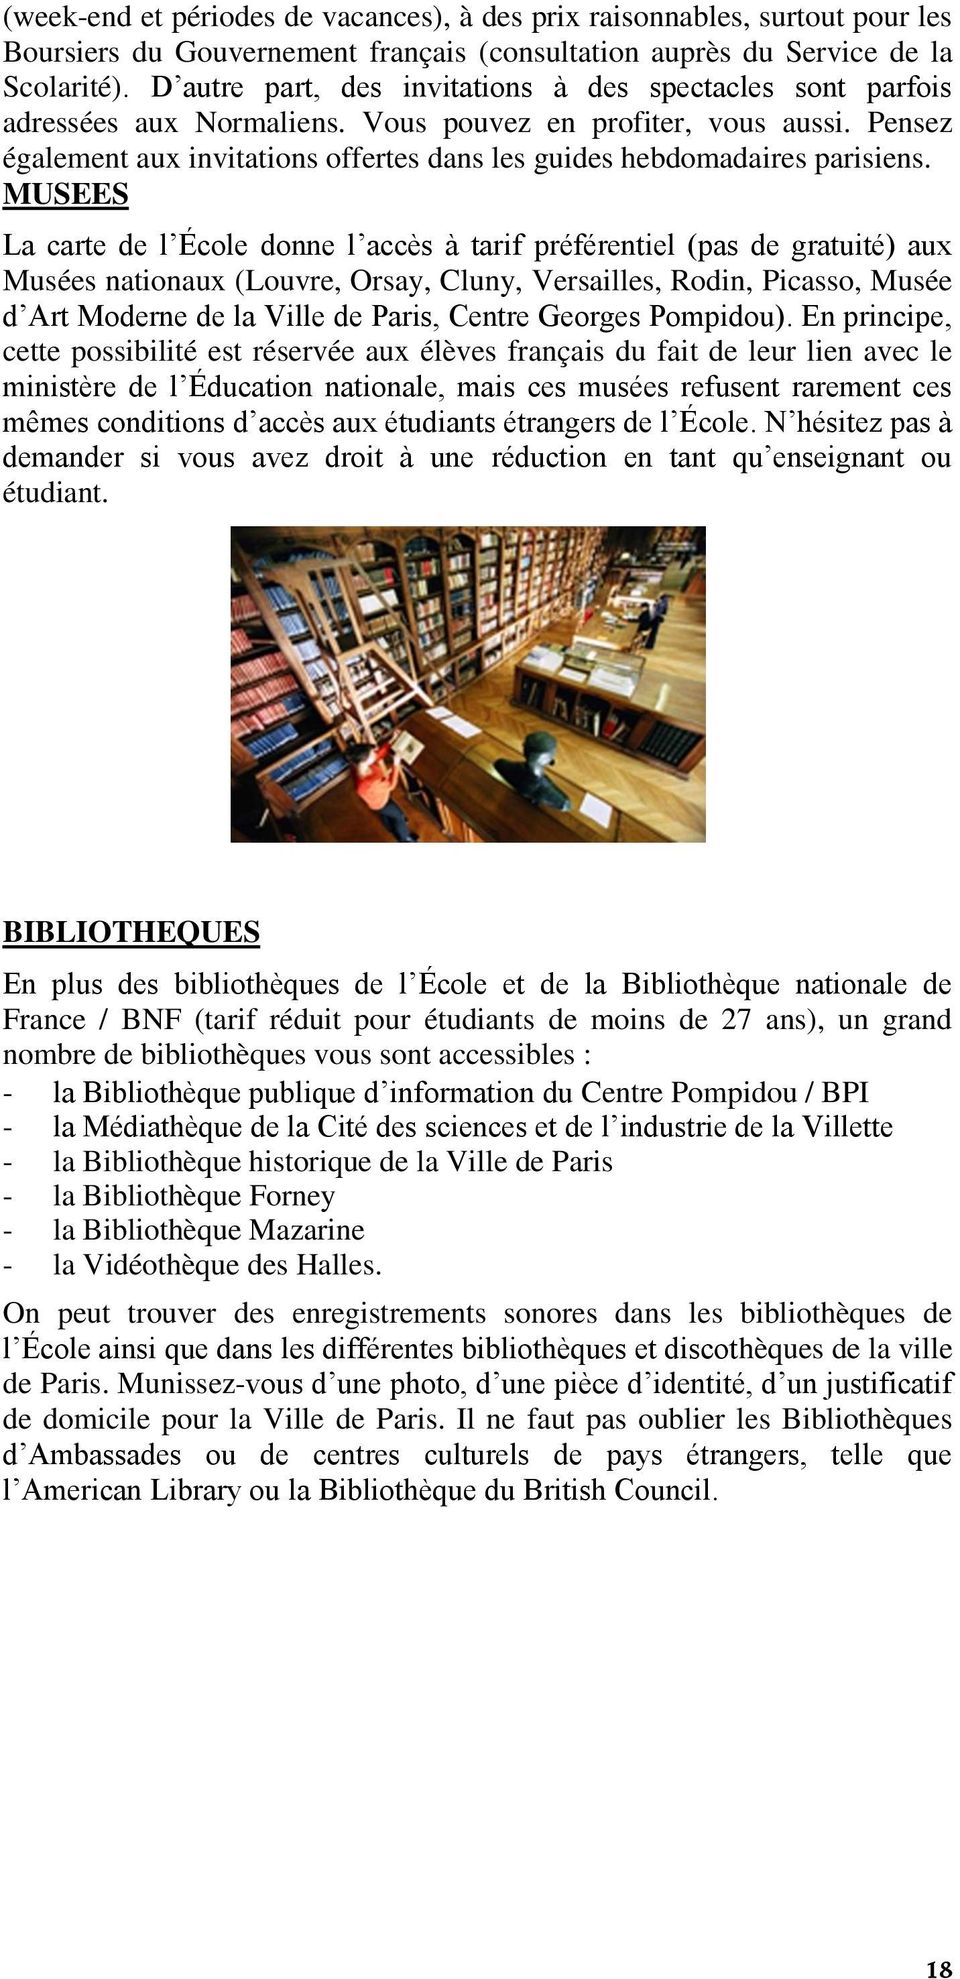 Pensez également aux invitations offertes dans les guides hebdomadaires parisiens.